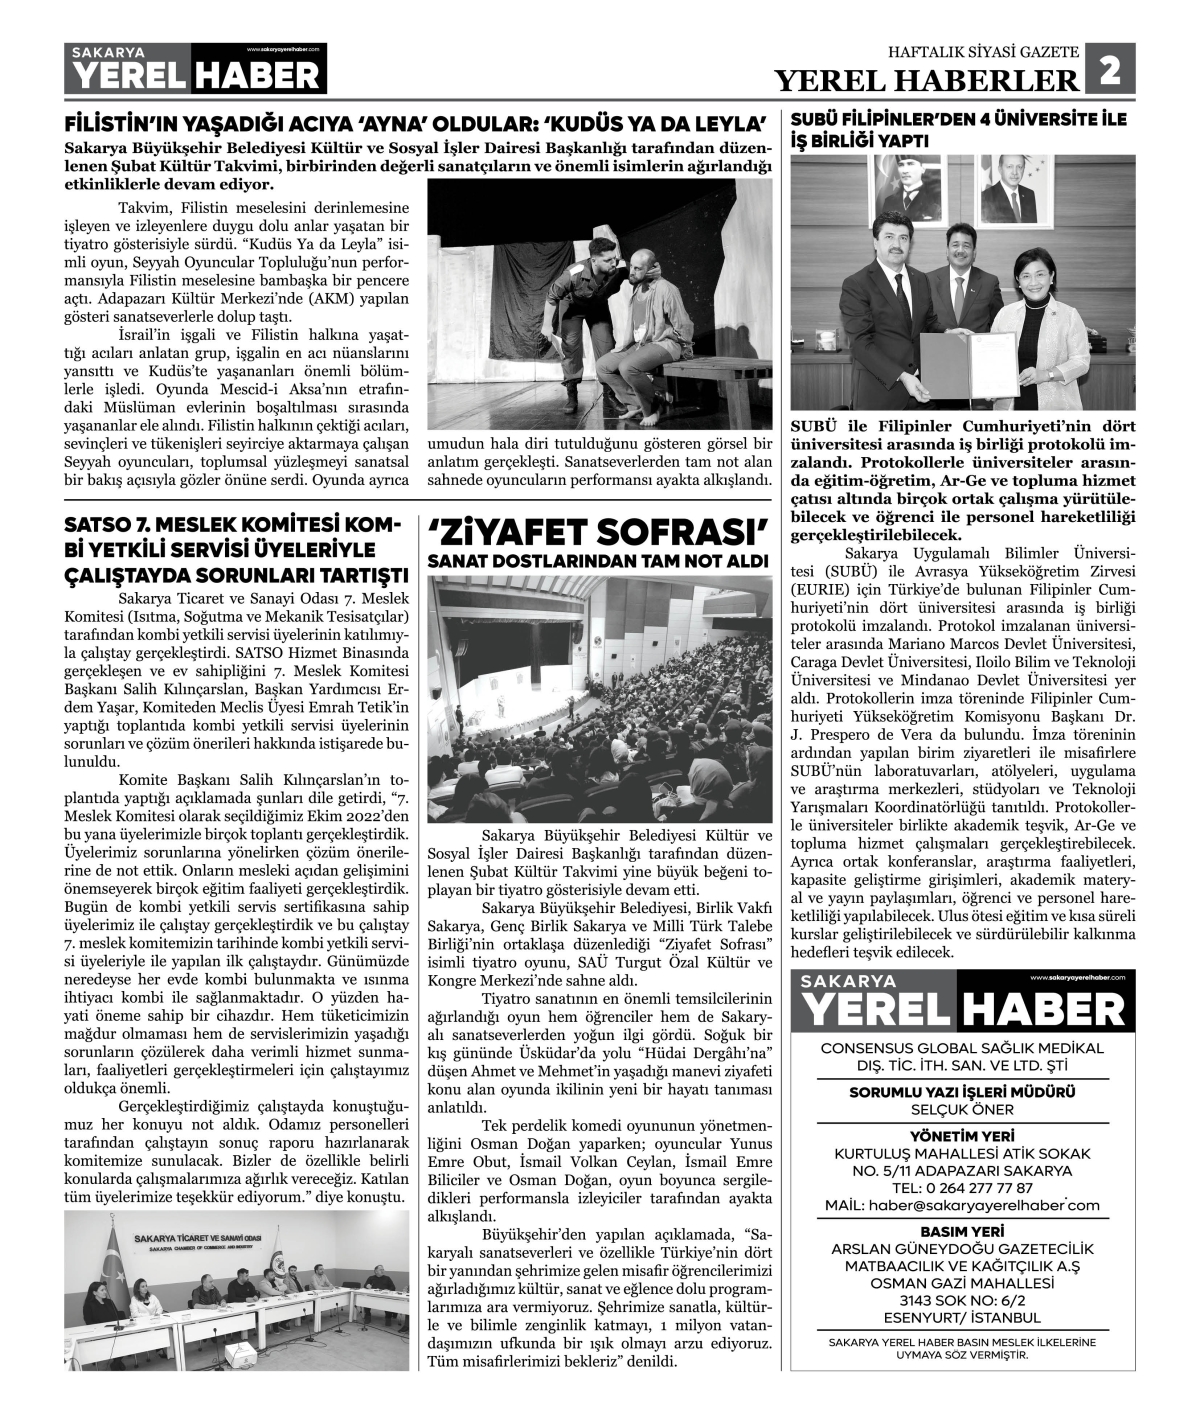 Sakarya Yerel Haber Gazetesi 44. Sayısı Çıktı